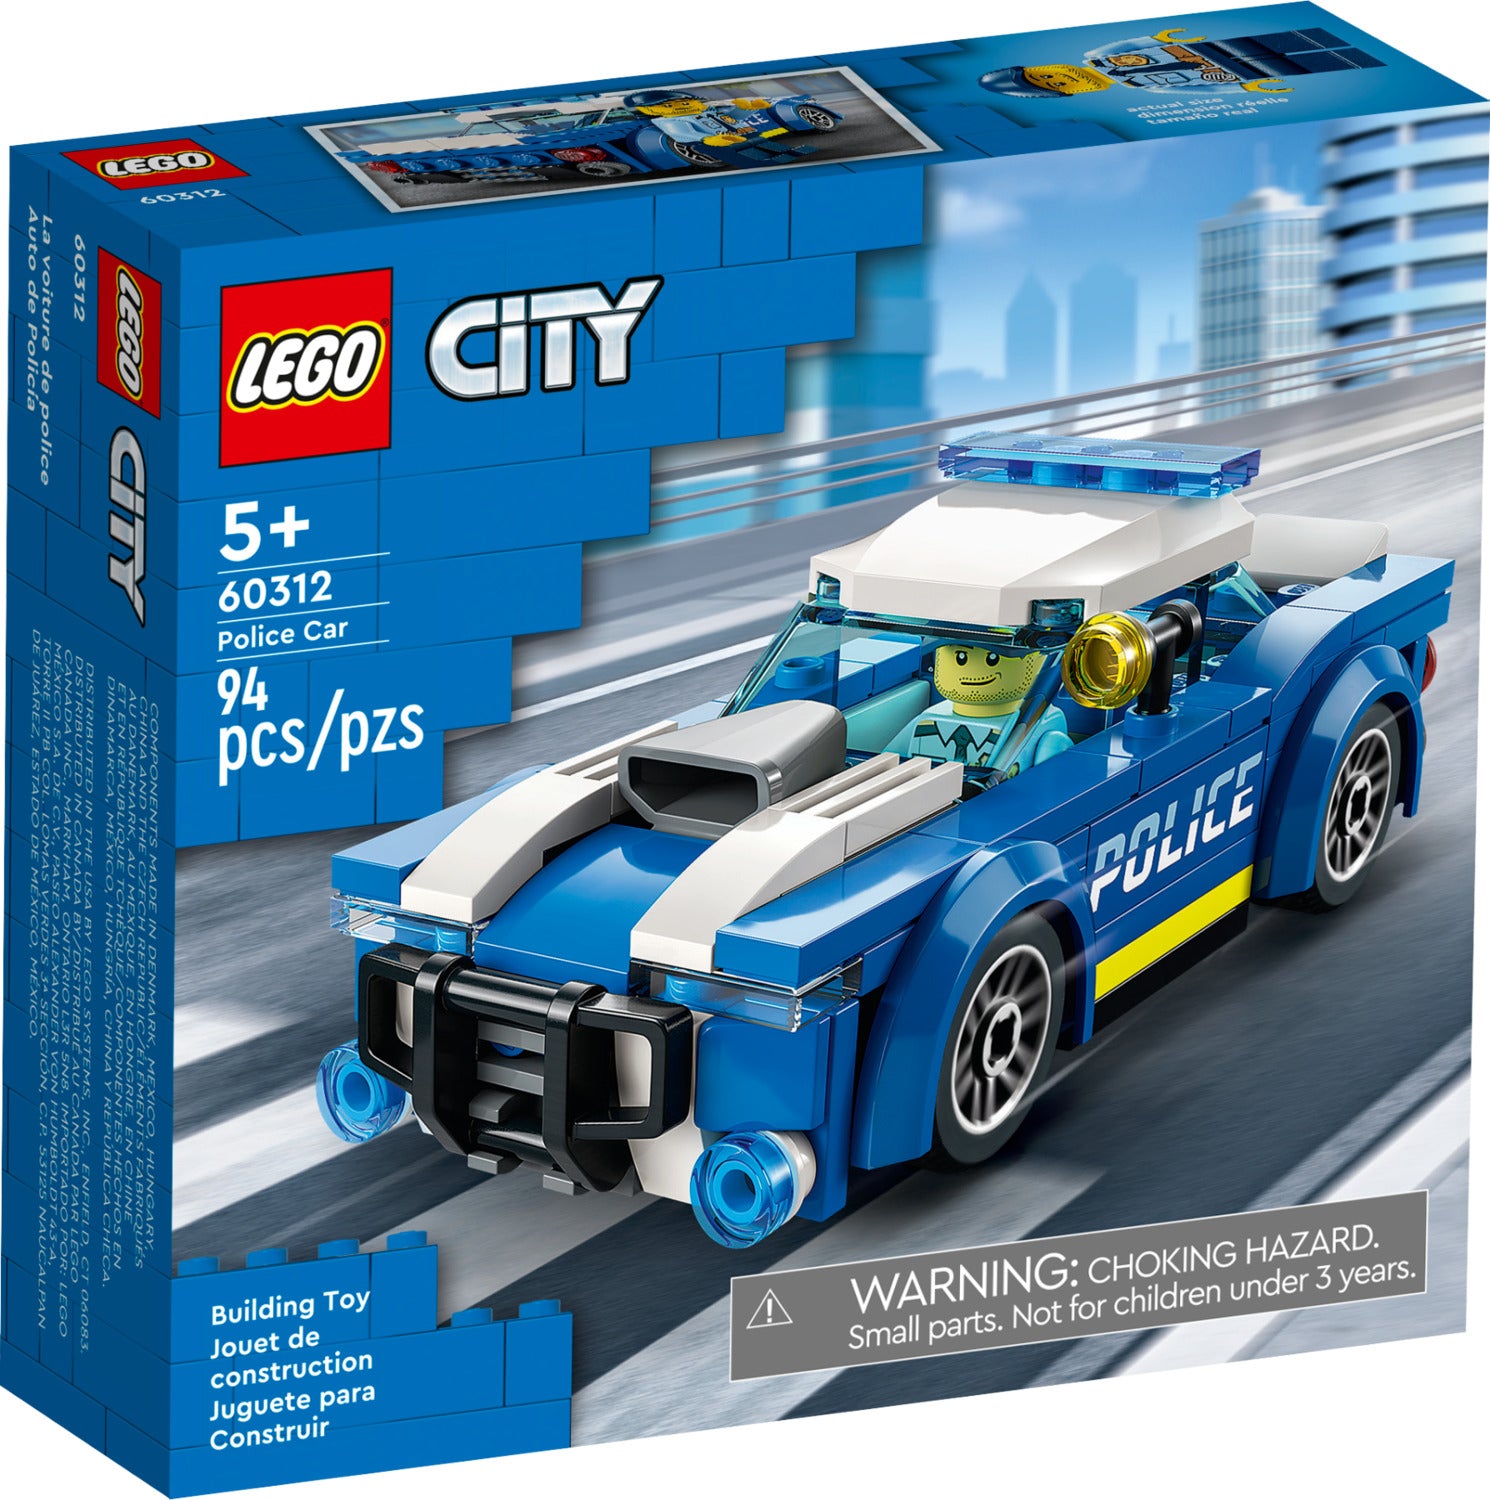 Artefact briefpapier seinpaal LEGO City: Police Car| TimbukToys